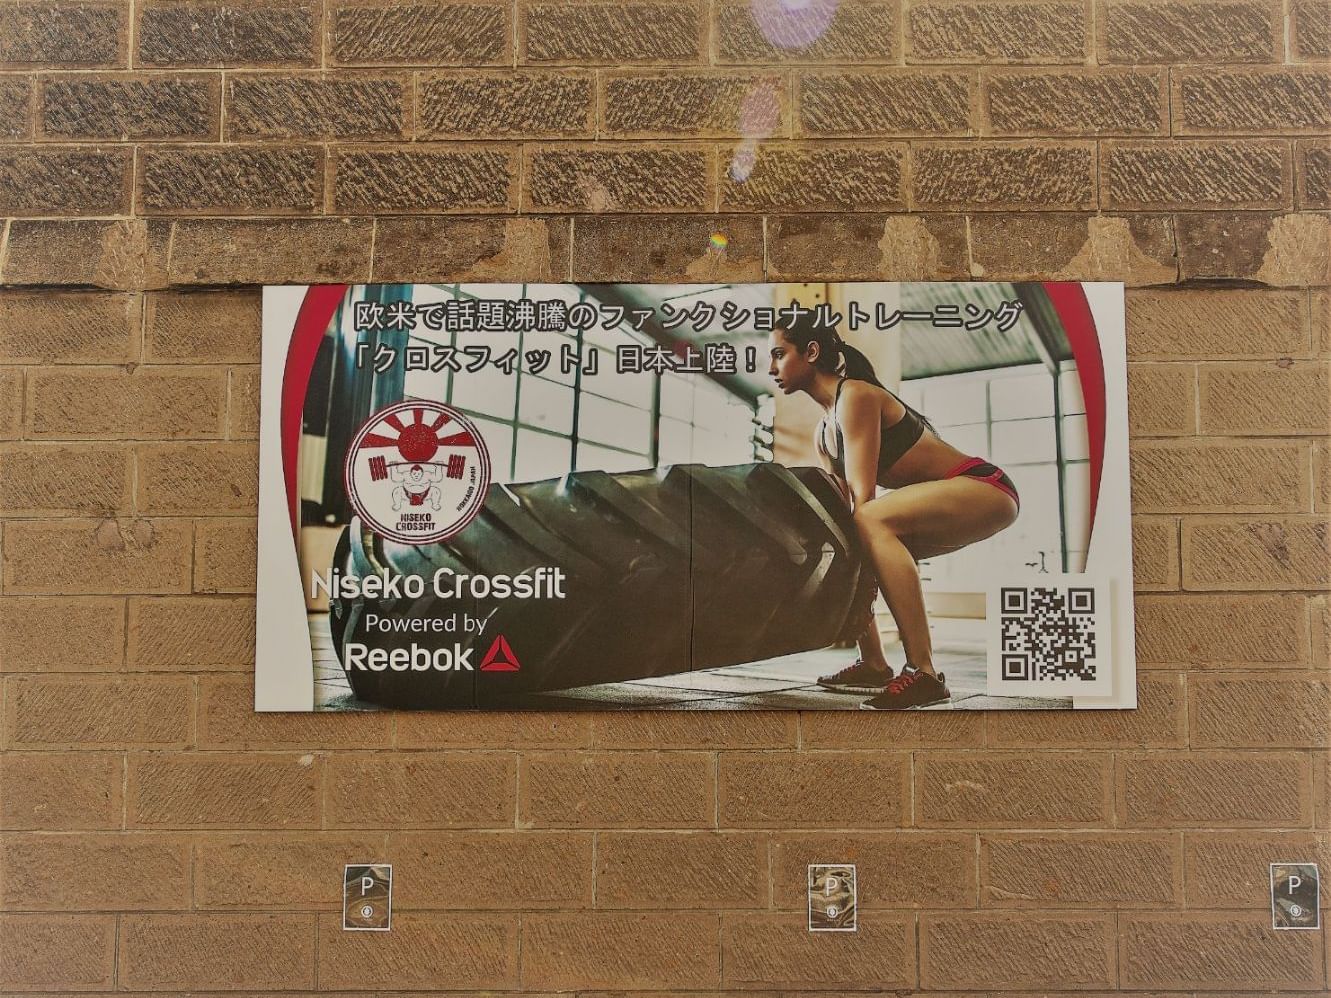 A poster of Niseko crossfit of warehouse in Kutchan near Chatrium Niseko Japan